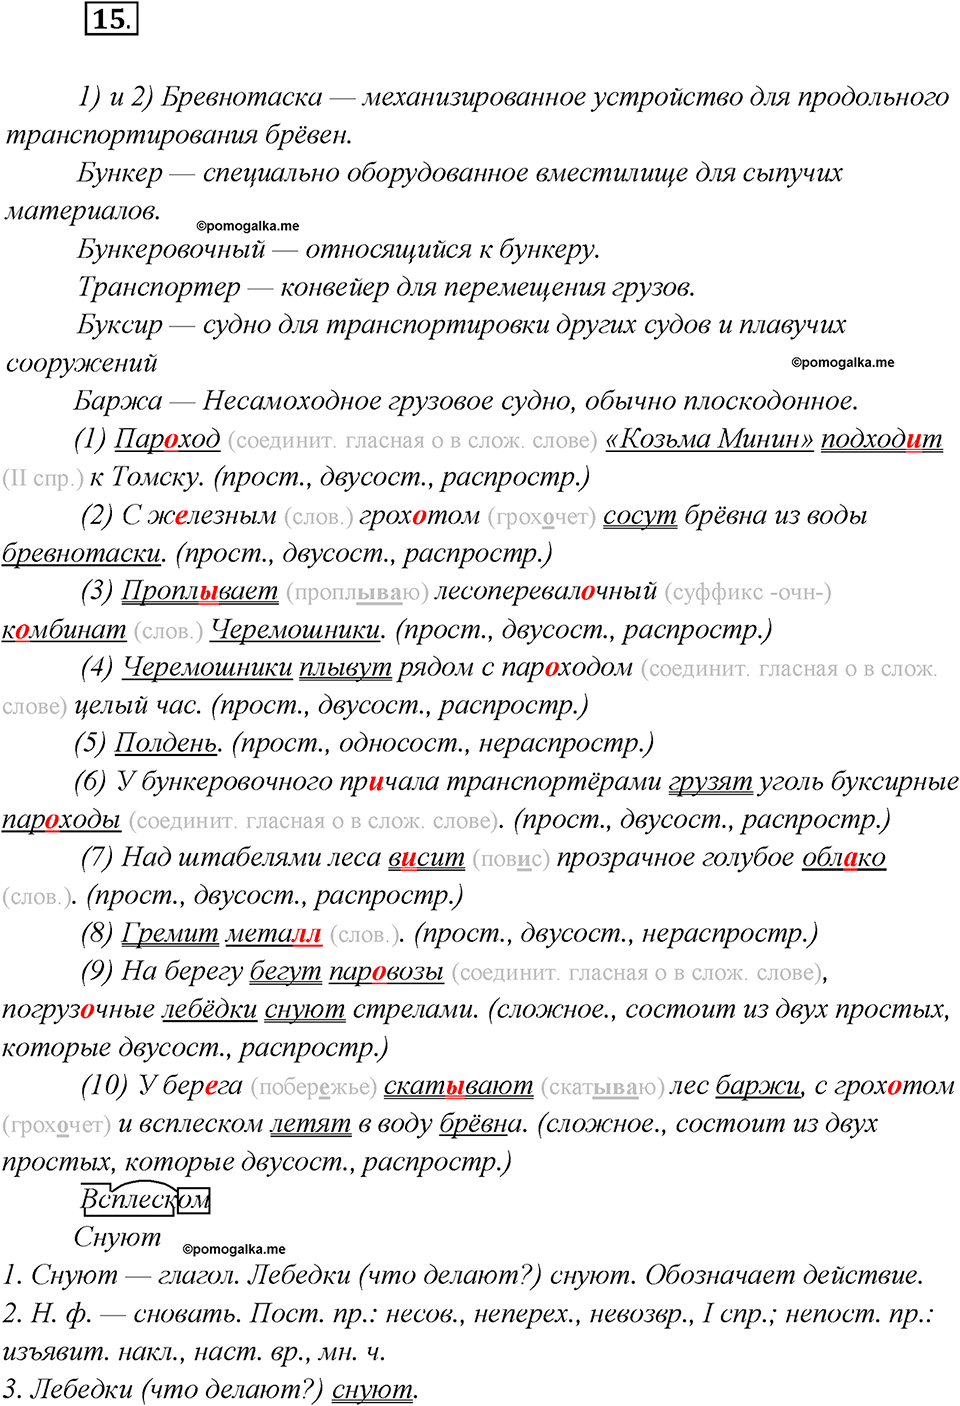 Глава 6. Упражнение №15 русский язык 7 класс Шмелев